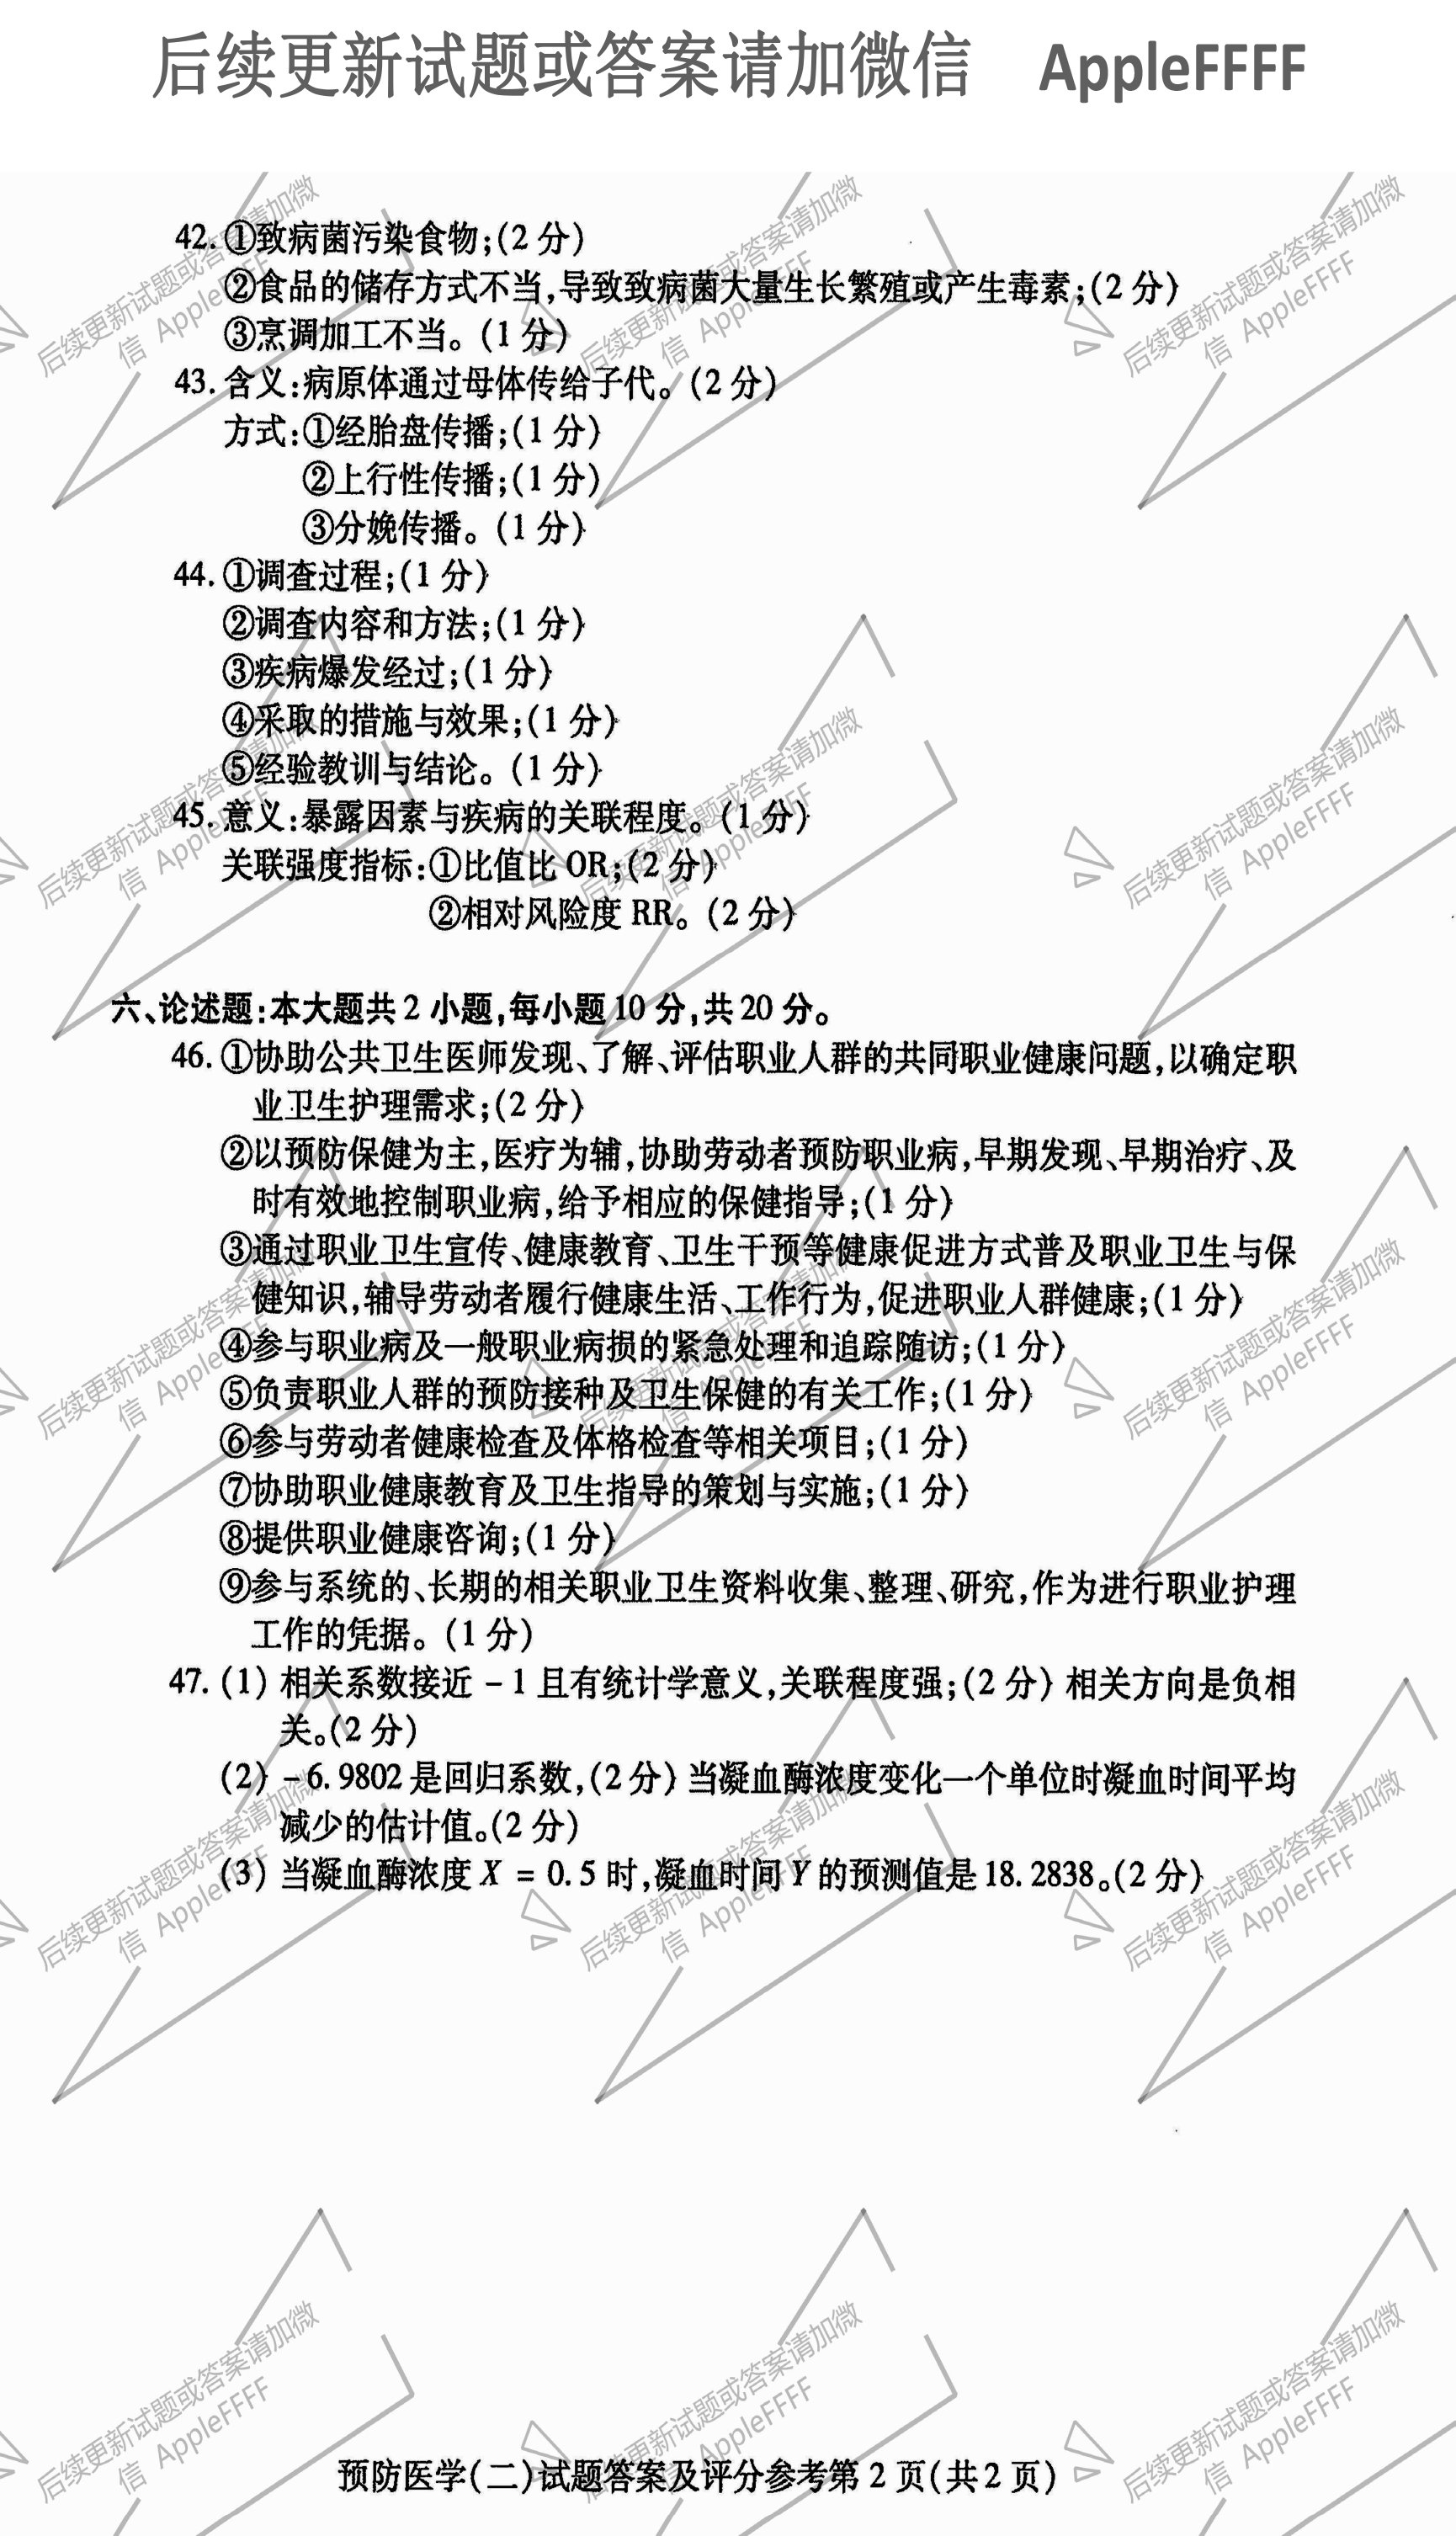 贵州省2021年10月自考03200预防医学（二）真题及答案